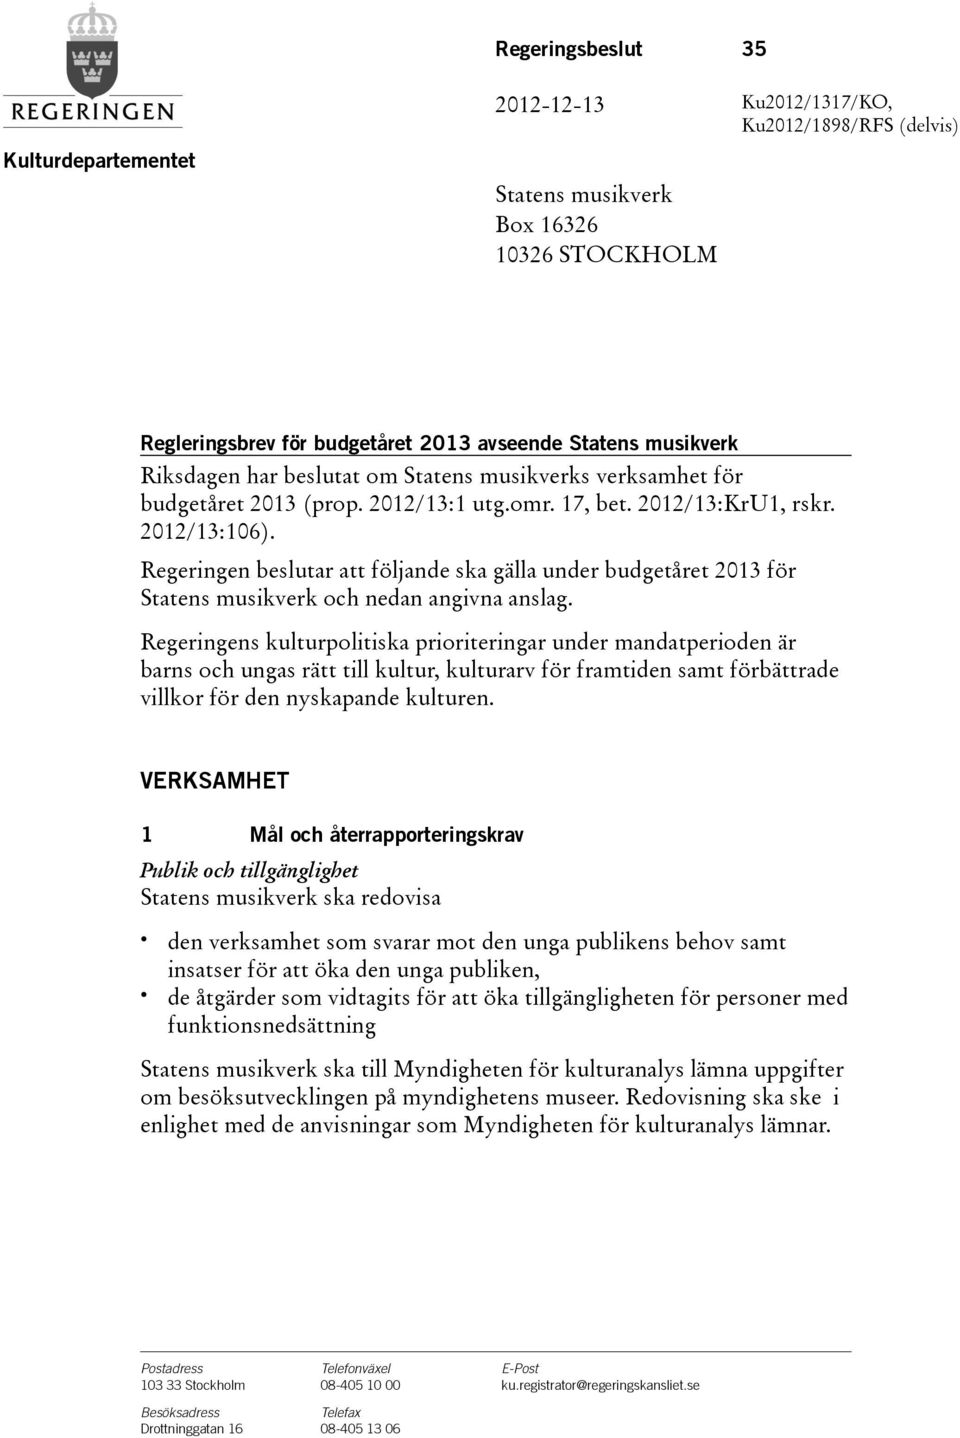 Regeringen beslutar att följande ska gälla under budgetåret för Statens musikverk och nedan angivna anslag.